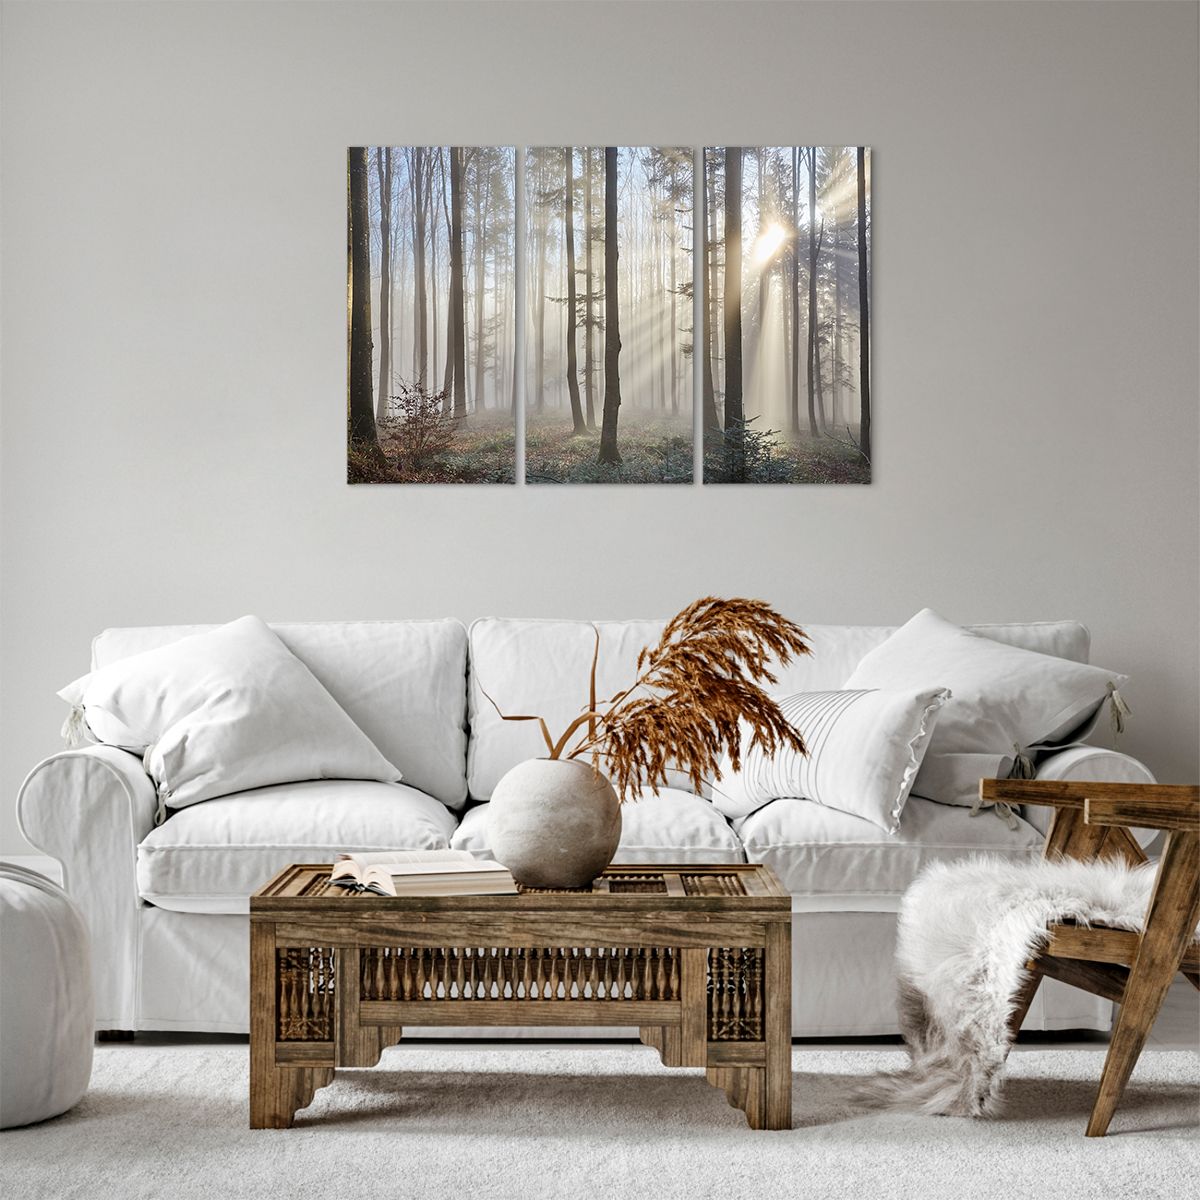 Bild auf Leinwand Landschaft, Bild auf Leinwand Wald, Bild auf Leinwand Nebel, Bild auf Leinwand Bäume, Bild auf Leinwand Natur